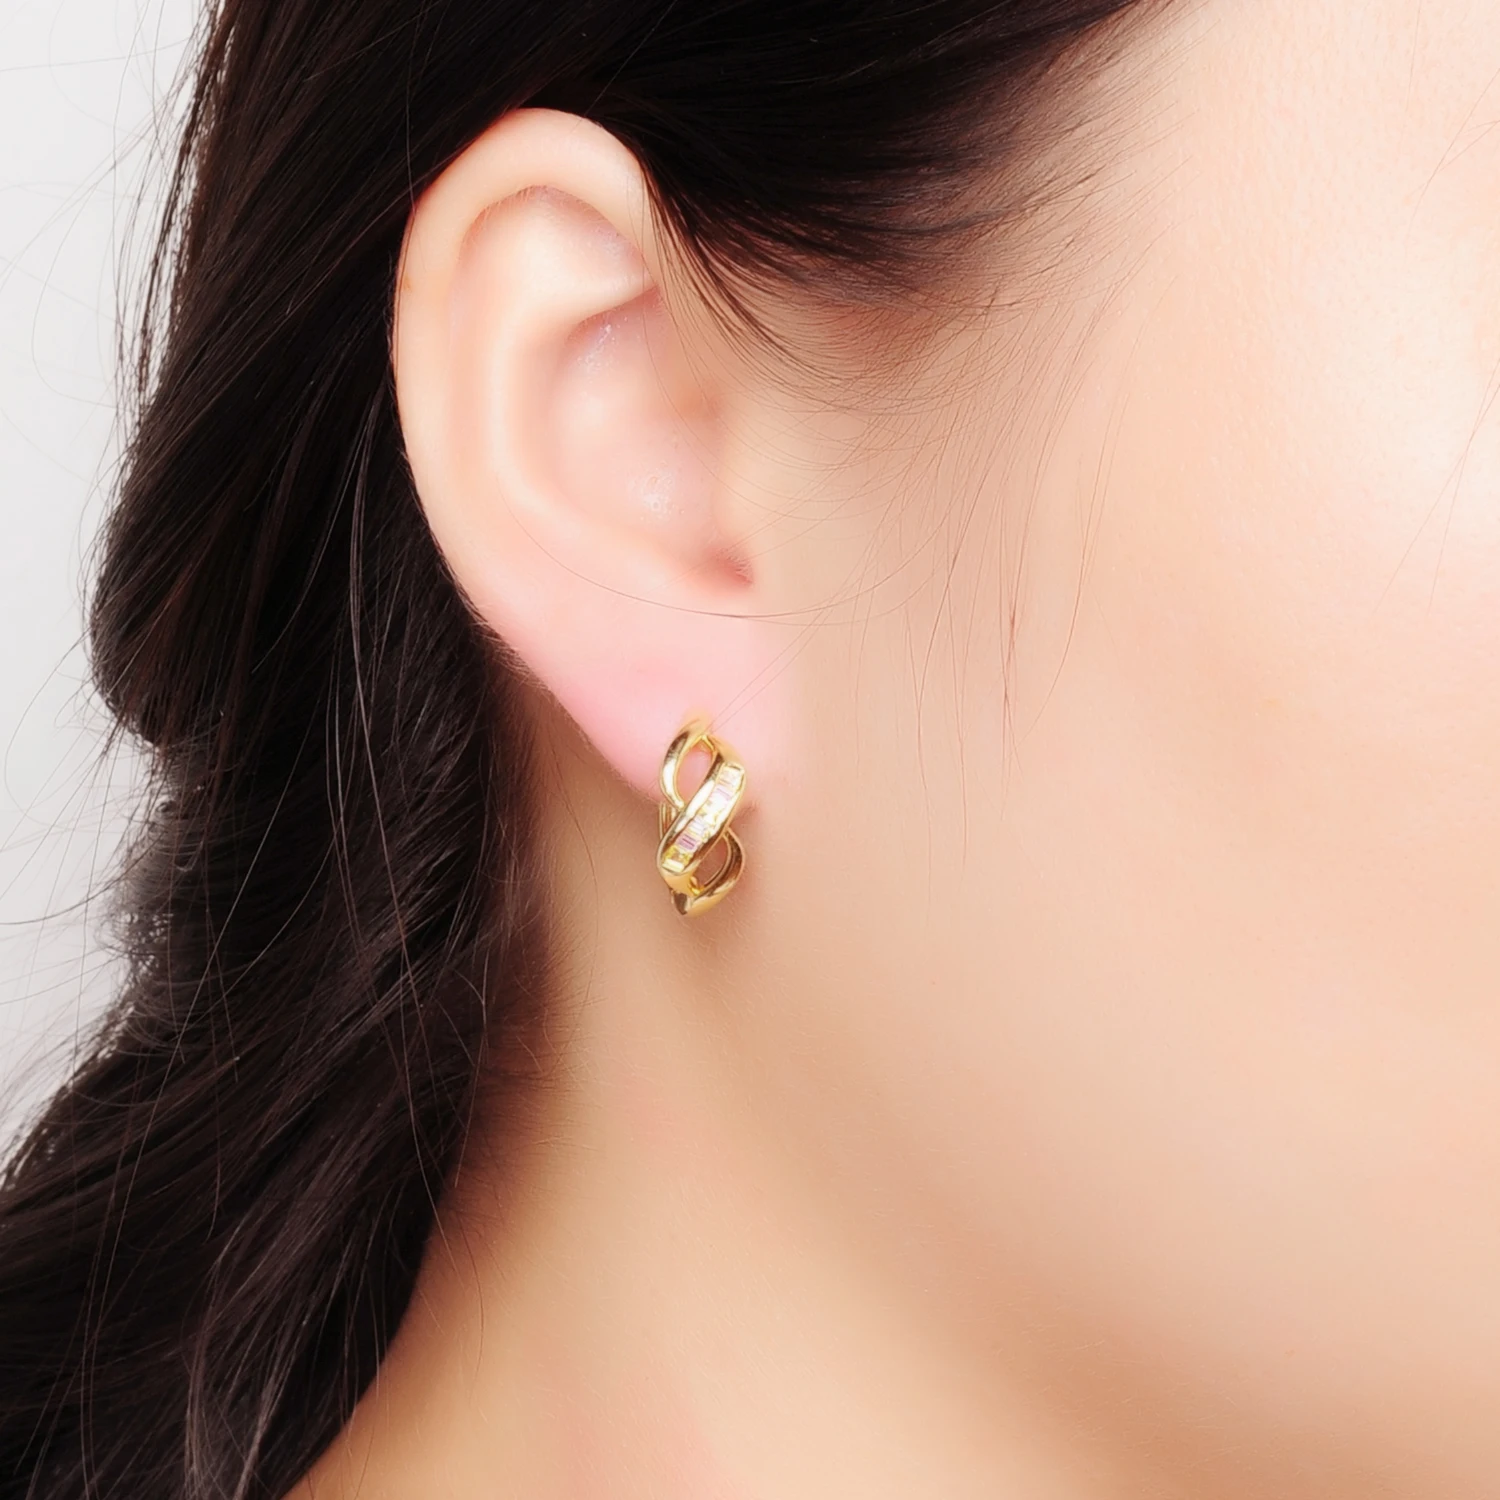 Luxury Earring 925 Sterling Silver 18k Gold Plated Double Loop Twisted S-Shape Women CZ Earring Hoop(图6)